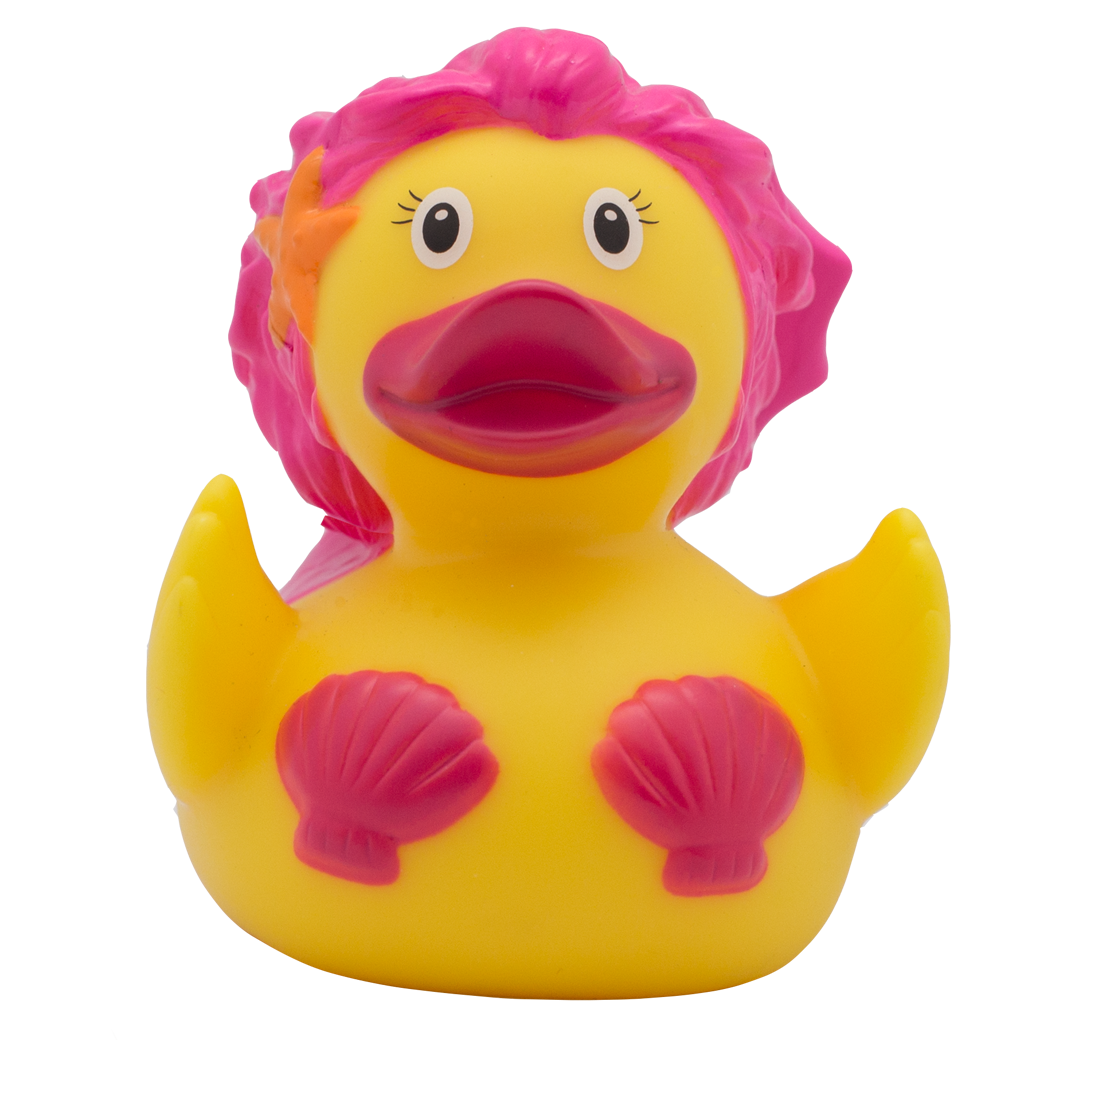 Rosa Meerjungfrau-Ente